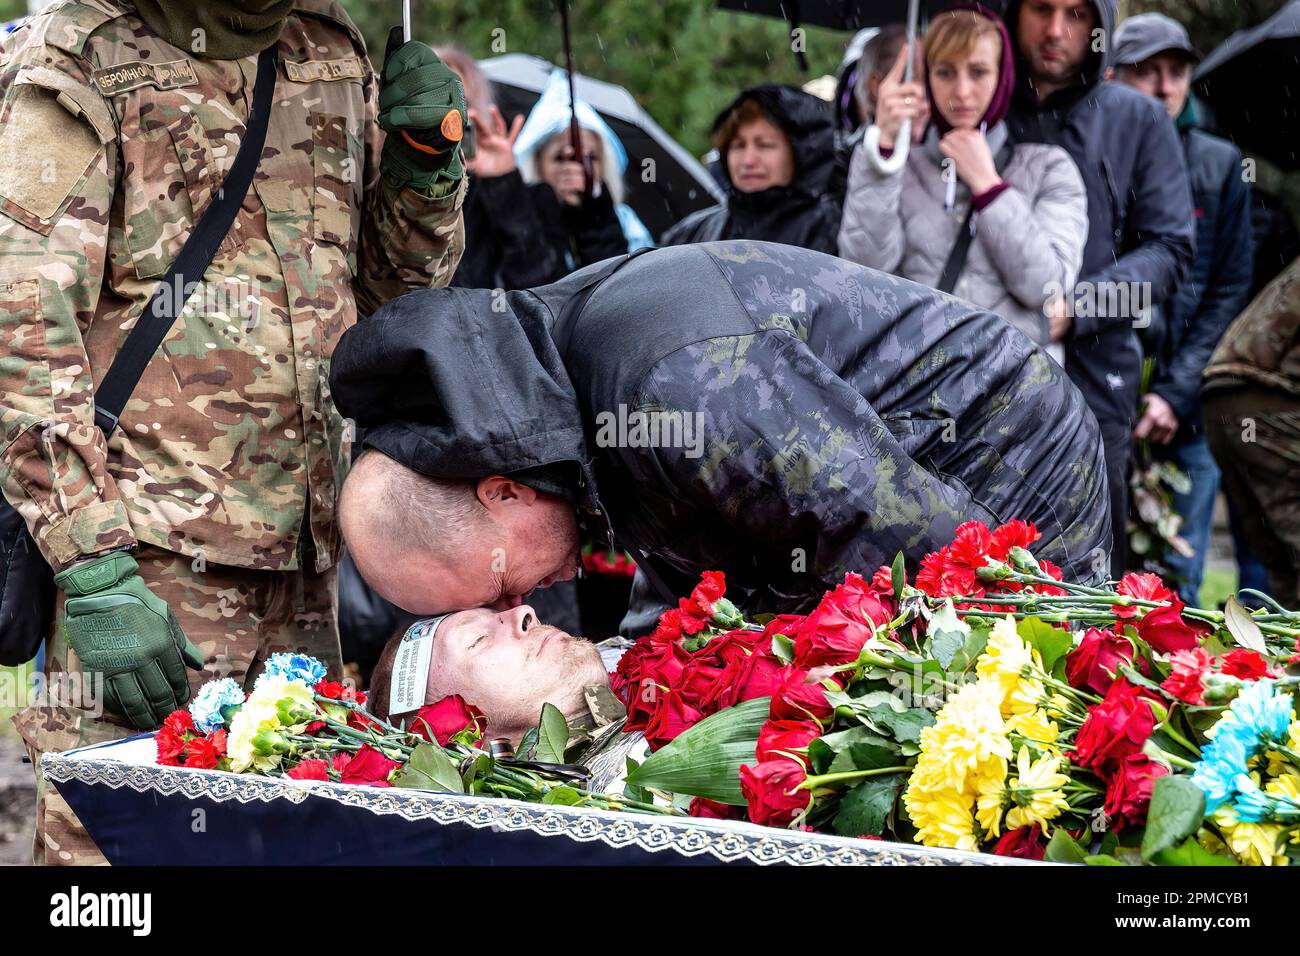 12. April 2023, Kiew, Ukraine: (HERAUSGEBER HINWEIS: Bild zeigt Tod) Ein Freund schenkt Respekt bei der Beerdigung von Evgeny Yakovlev, 42, einem Soldaten, der von russischen Streitkräften an der Ostukrainischen Front in einem Kampf auf dem Lisove Friedhof in Kiew getötet wurde. Auf dem Lisove Friedhof sind die meisten der gefallenen Armeeangehörigen aus Kiew begraben. Da die Invasion der Ukraine in vollem Umfang durch die russischen Streitkräfte andauert, verursacht der Kampf im Osten der Ukraine eine sehr hohe Zahl von Opfern, obwohl die genauen Zahlen unbekannt sind. Die Ukraine bereitet sich auf eine Frühjahrsoffensive zur Rückeroberung des von Russland besetzten Landes vor. (Bild: © Dominika Zarzycka Stockfoto